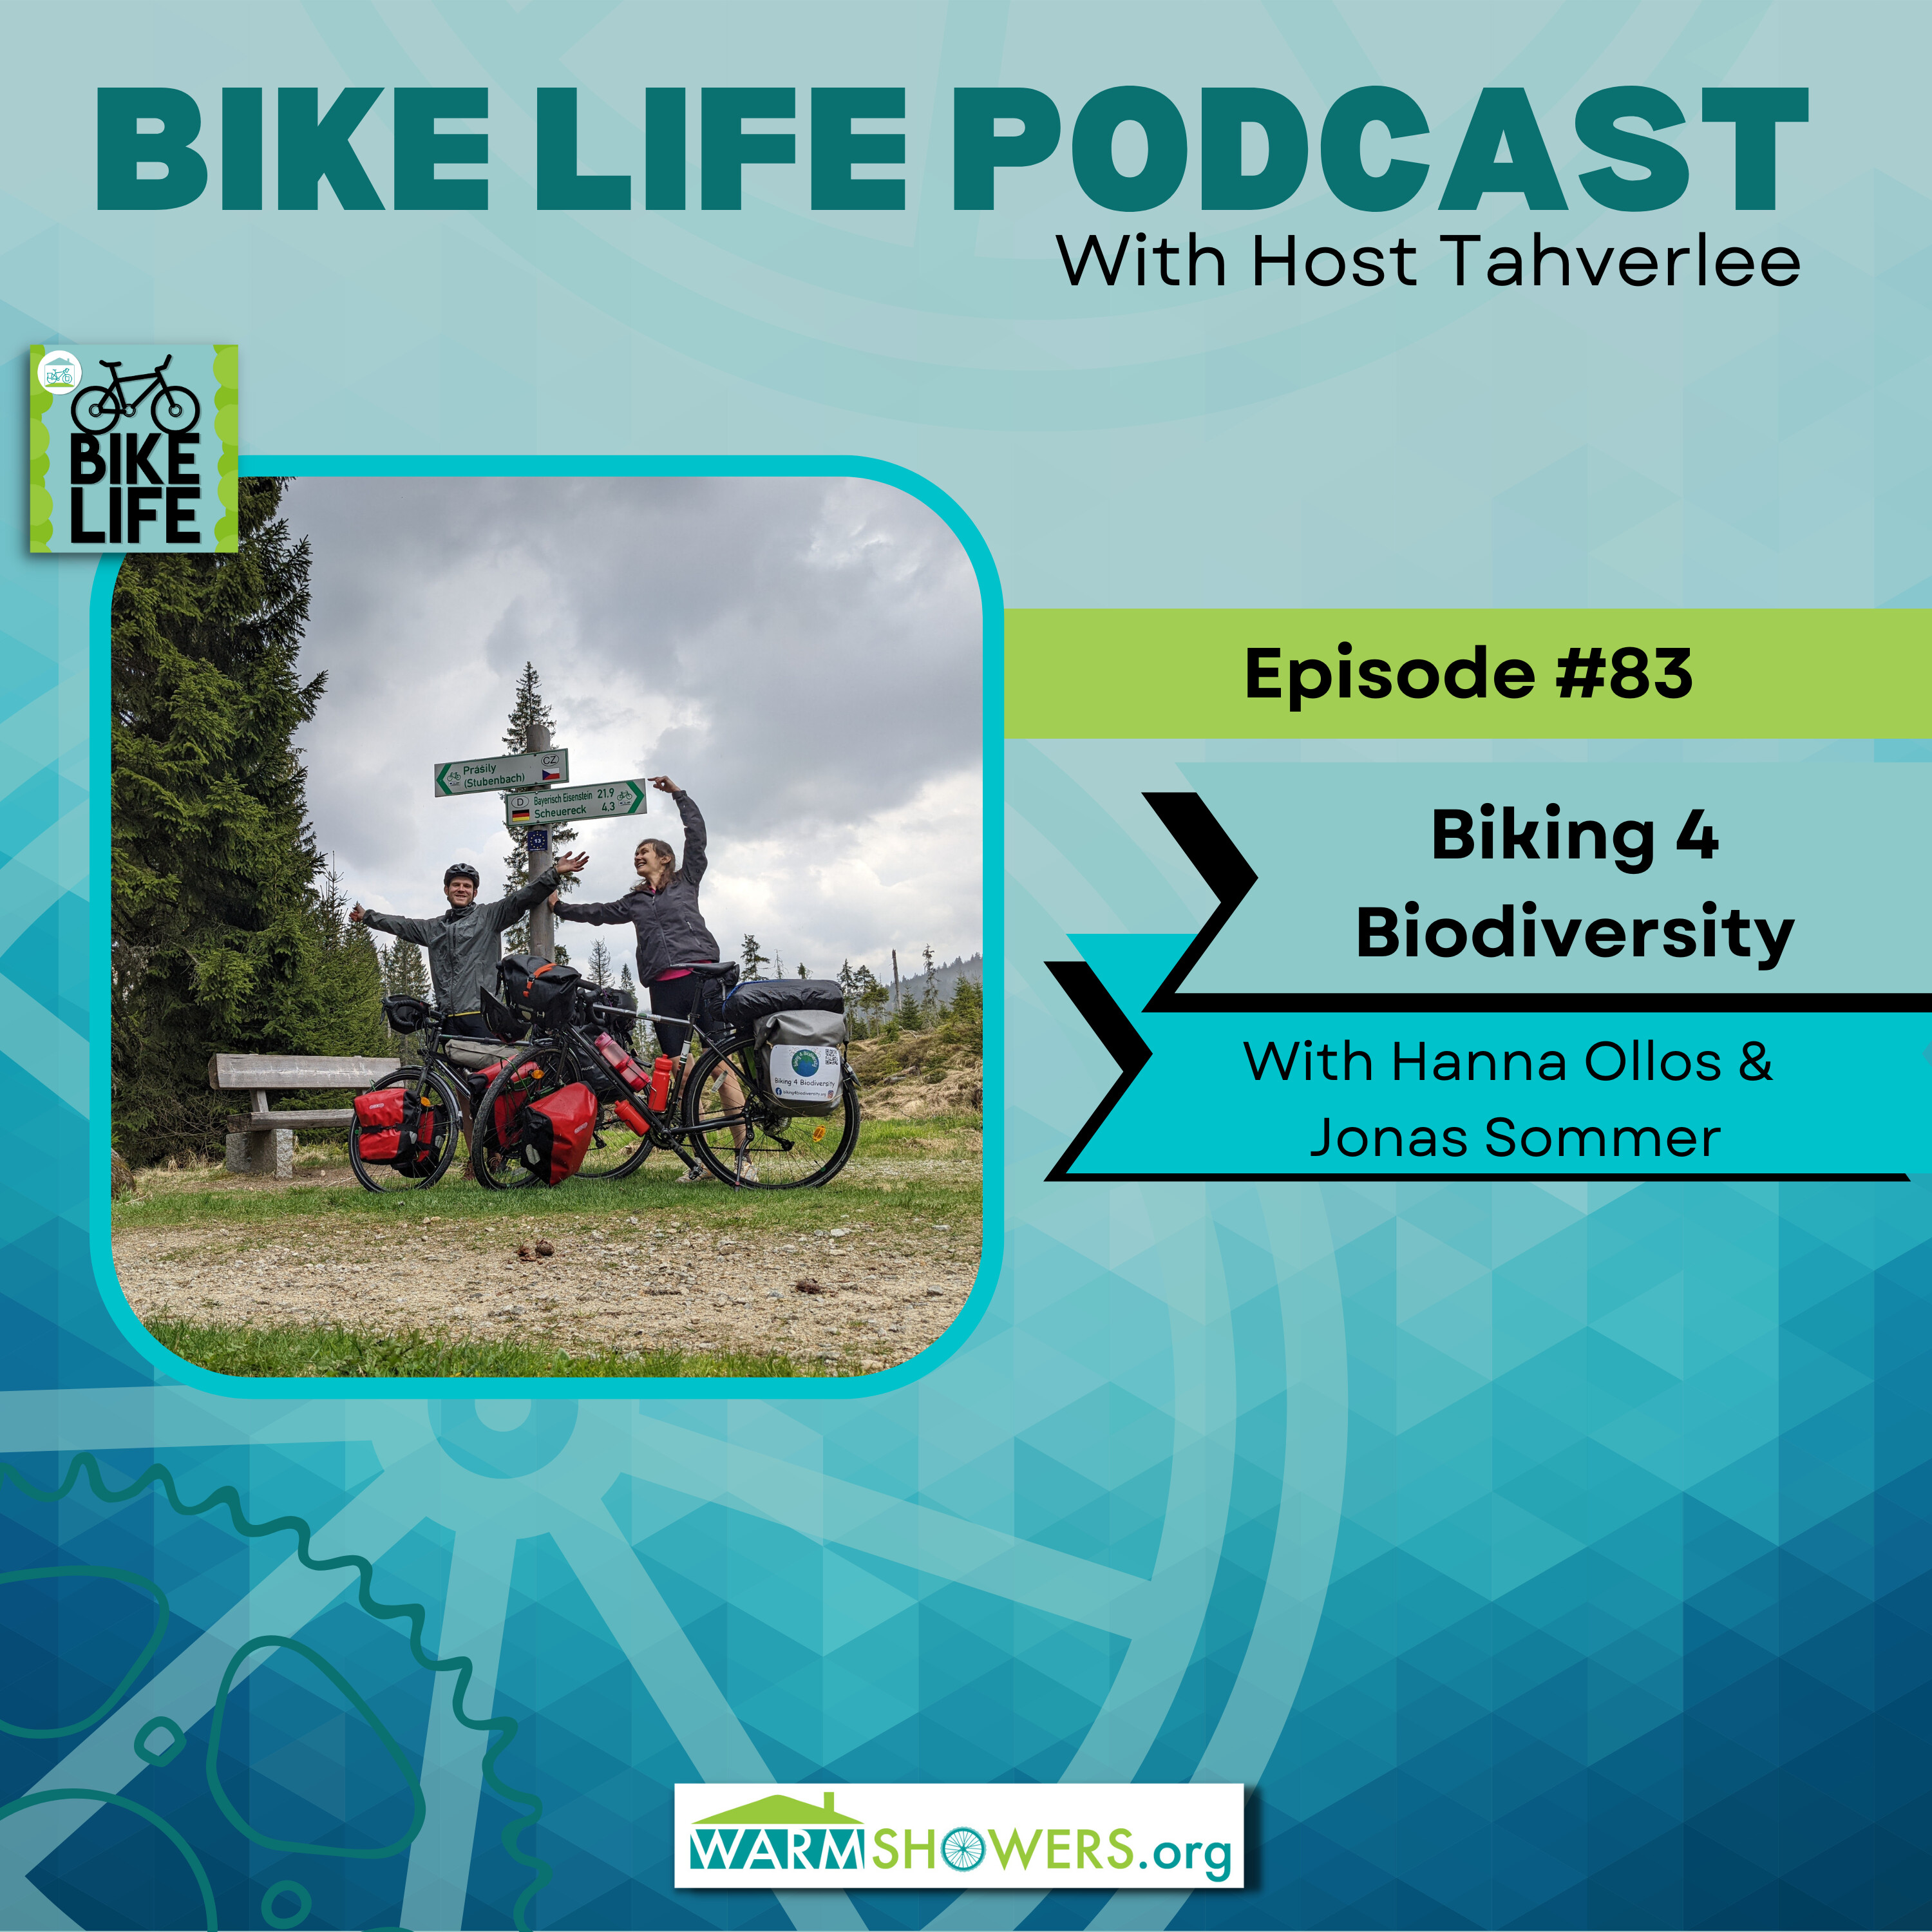 Biking 4 Biodiversity